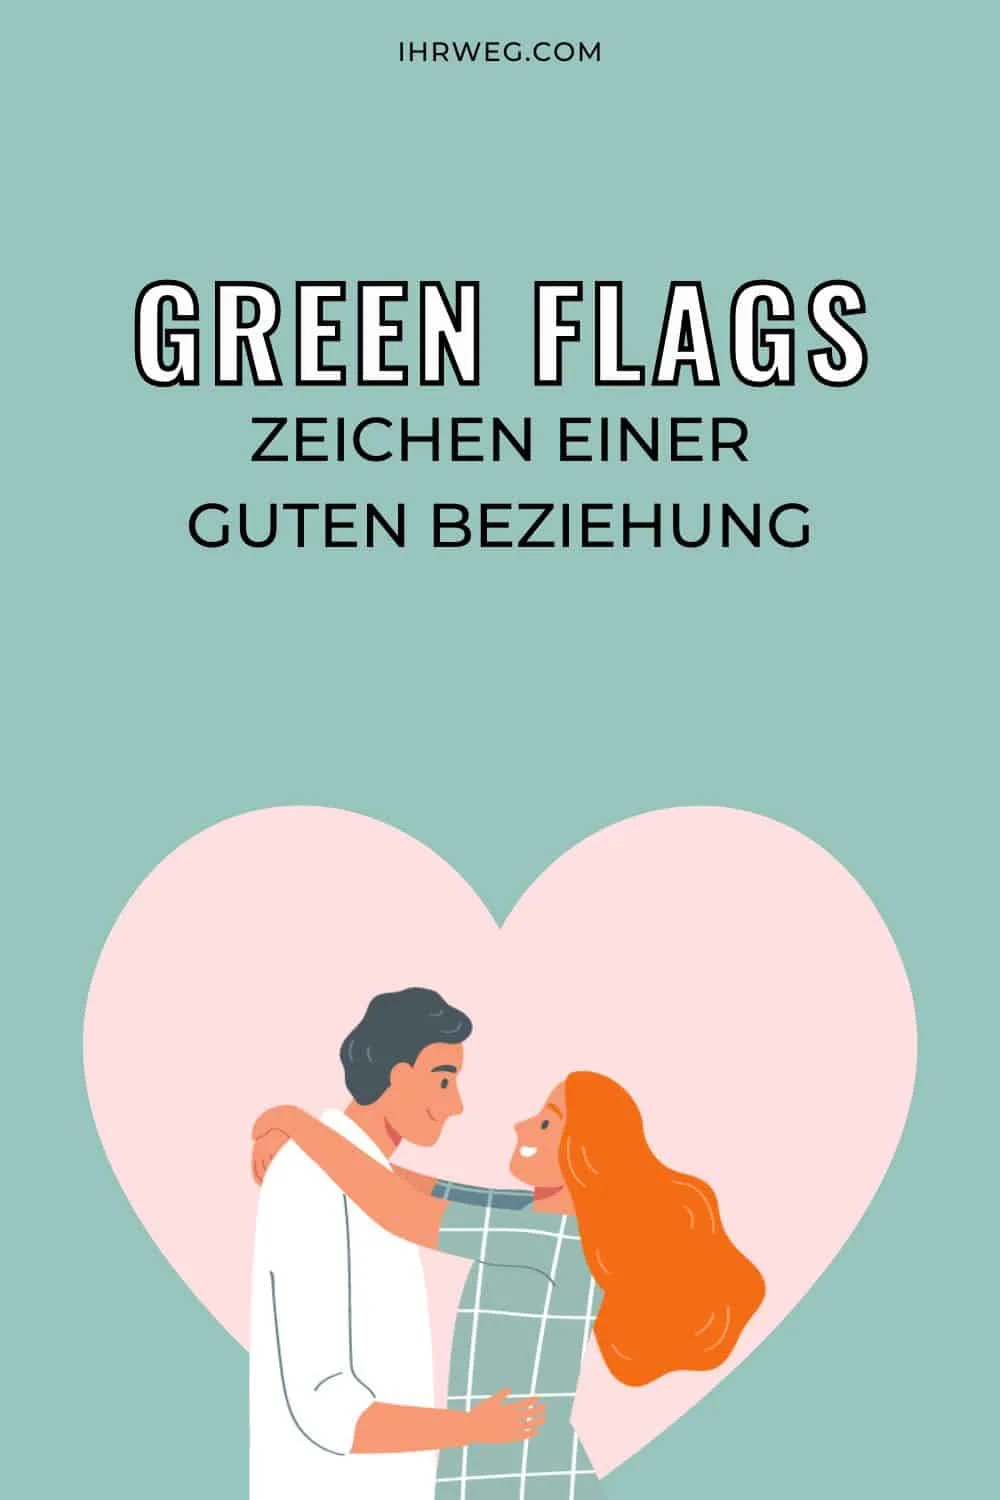 Glücklich und zufrieden: Die Green Flags in einer Beziehung